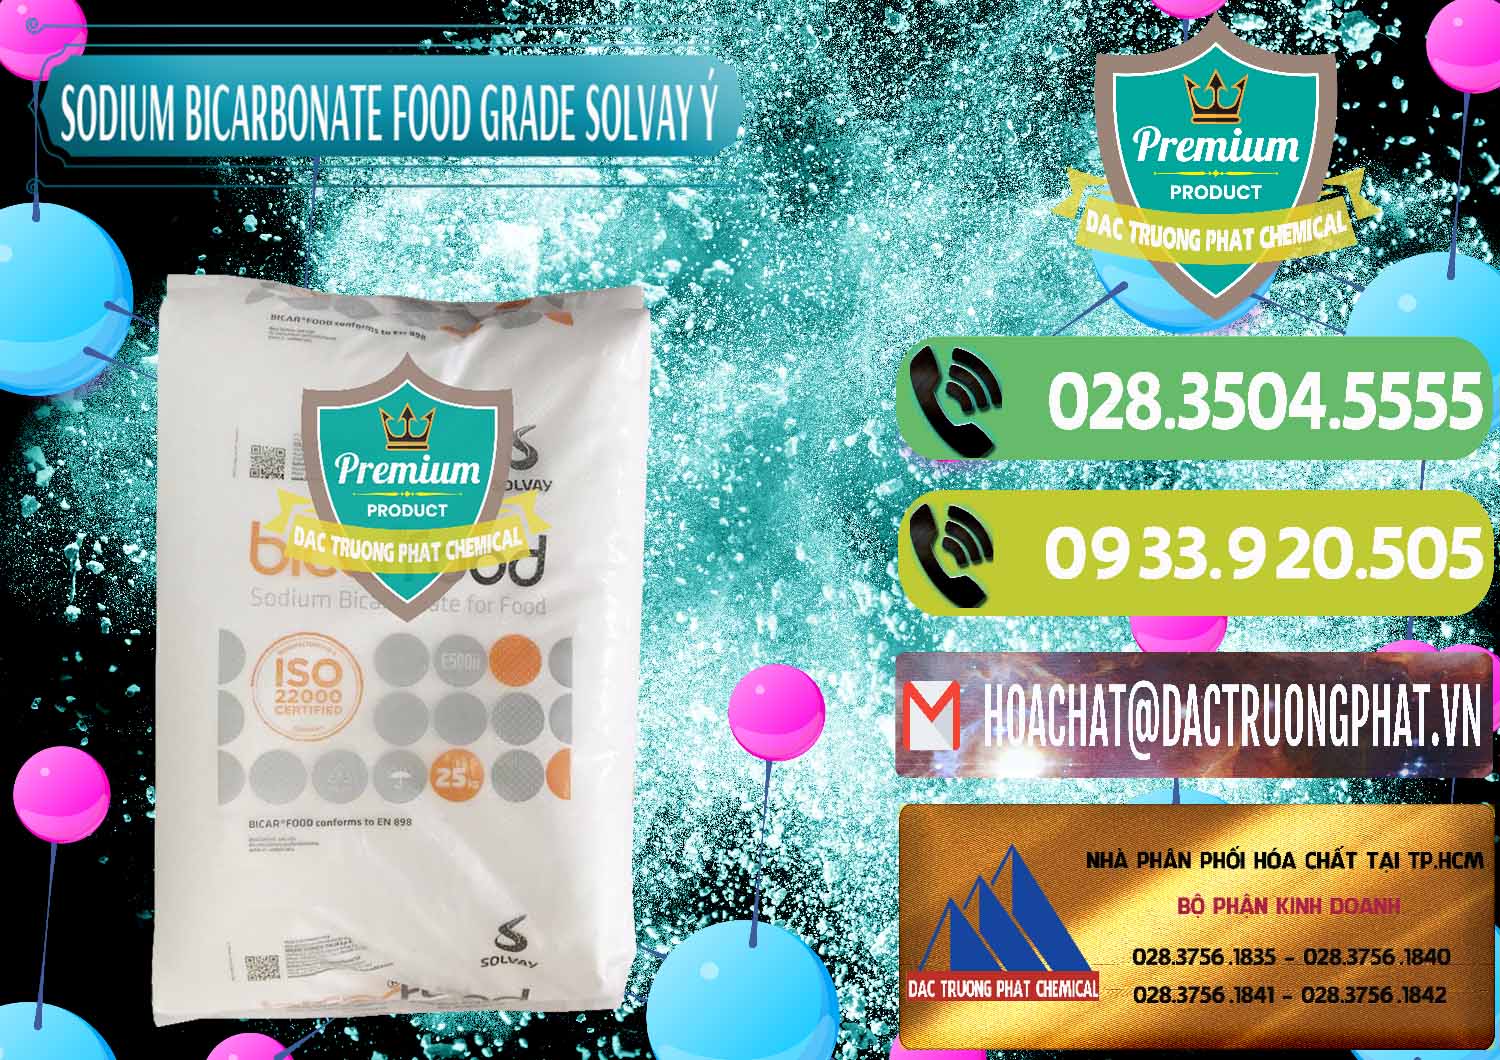 Chuyên kinh doanh _ bán Sodium Bicarbonate – Bicar NaHCO3 Food Grade Solvay Ý Italy - 0220 - Cty phân phối & cung ứng hóa chất tại TP.HCM - hoachatmientay.vn